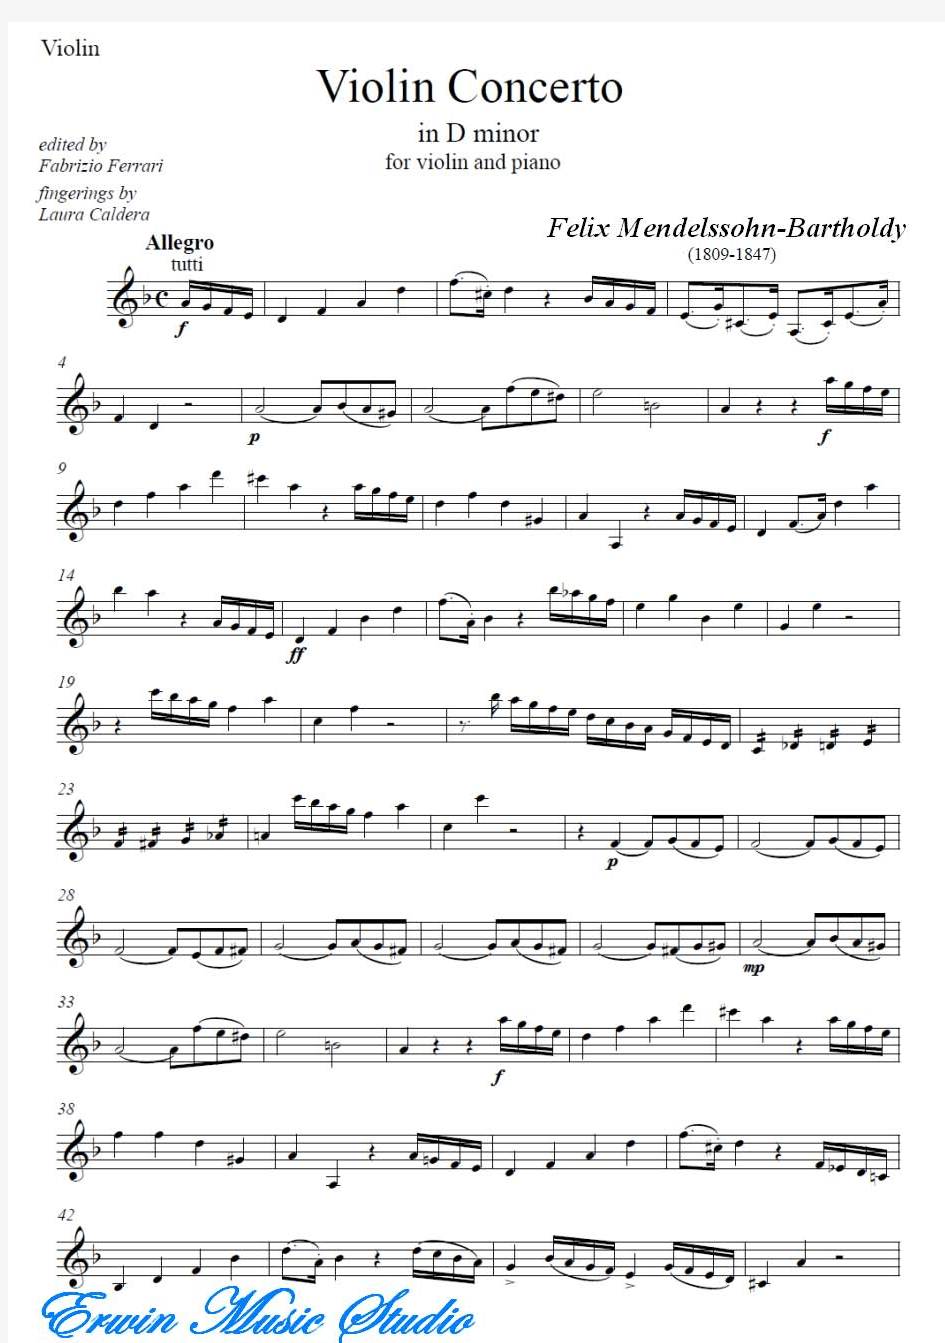 费利克斯·门德尔松《D小调小提琴协奏曲》小提琴曲谱+钢琴伴奏曲谱